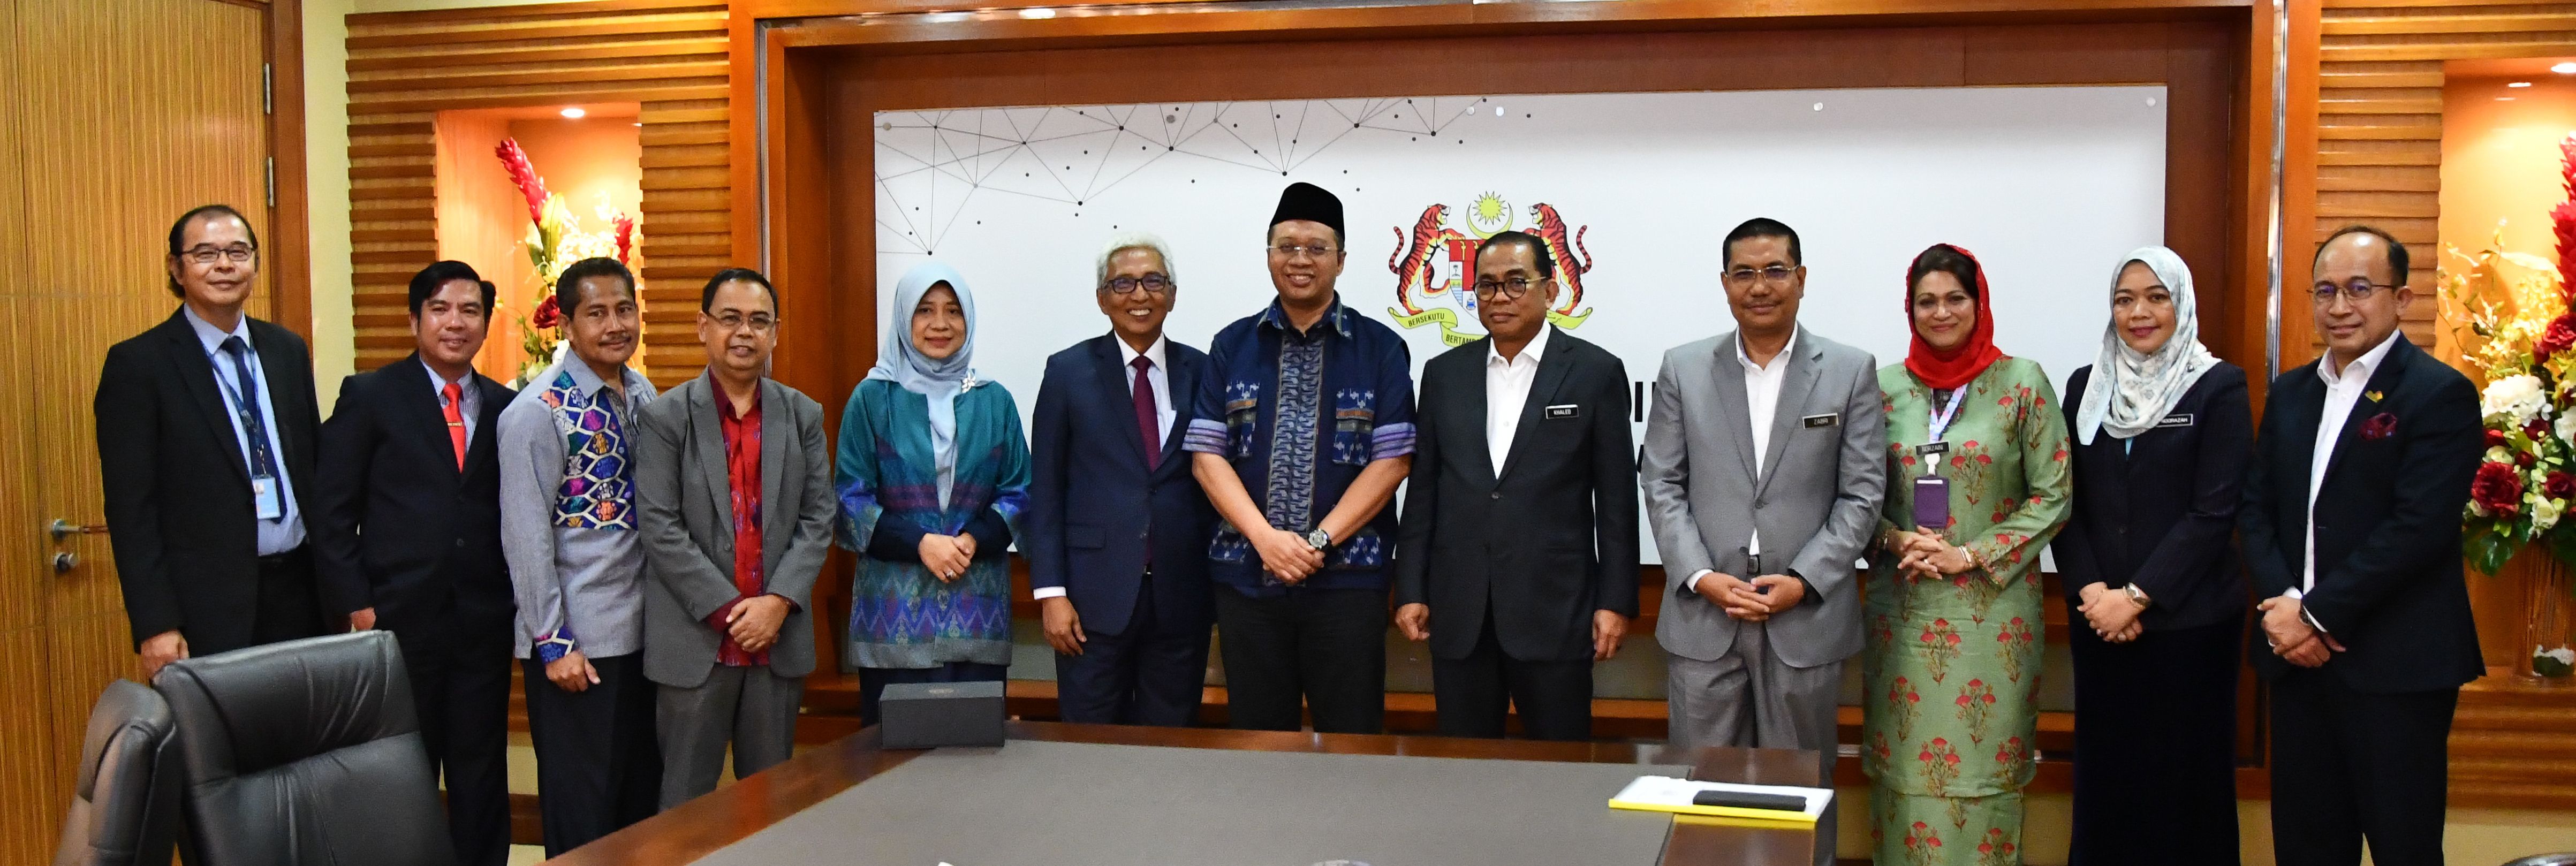 Malaysia Dan Indonesia Jalin Kerjasama Memperkasa Pendidikan Tinggi